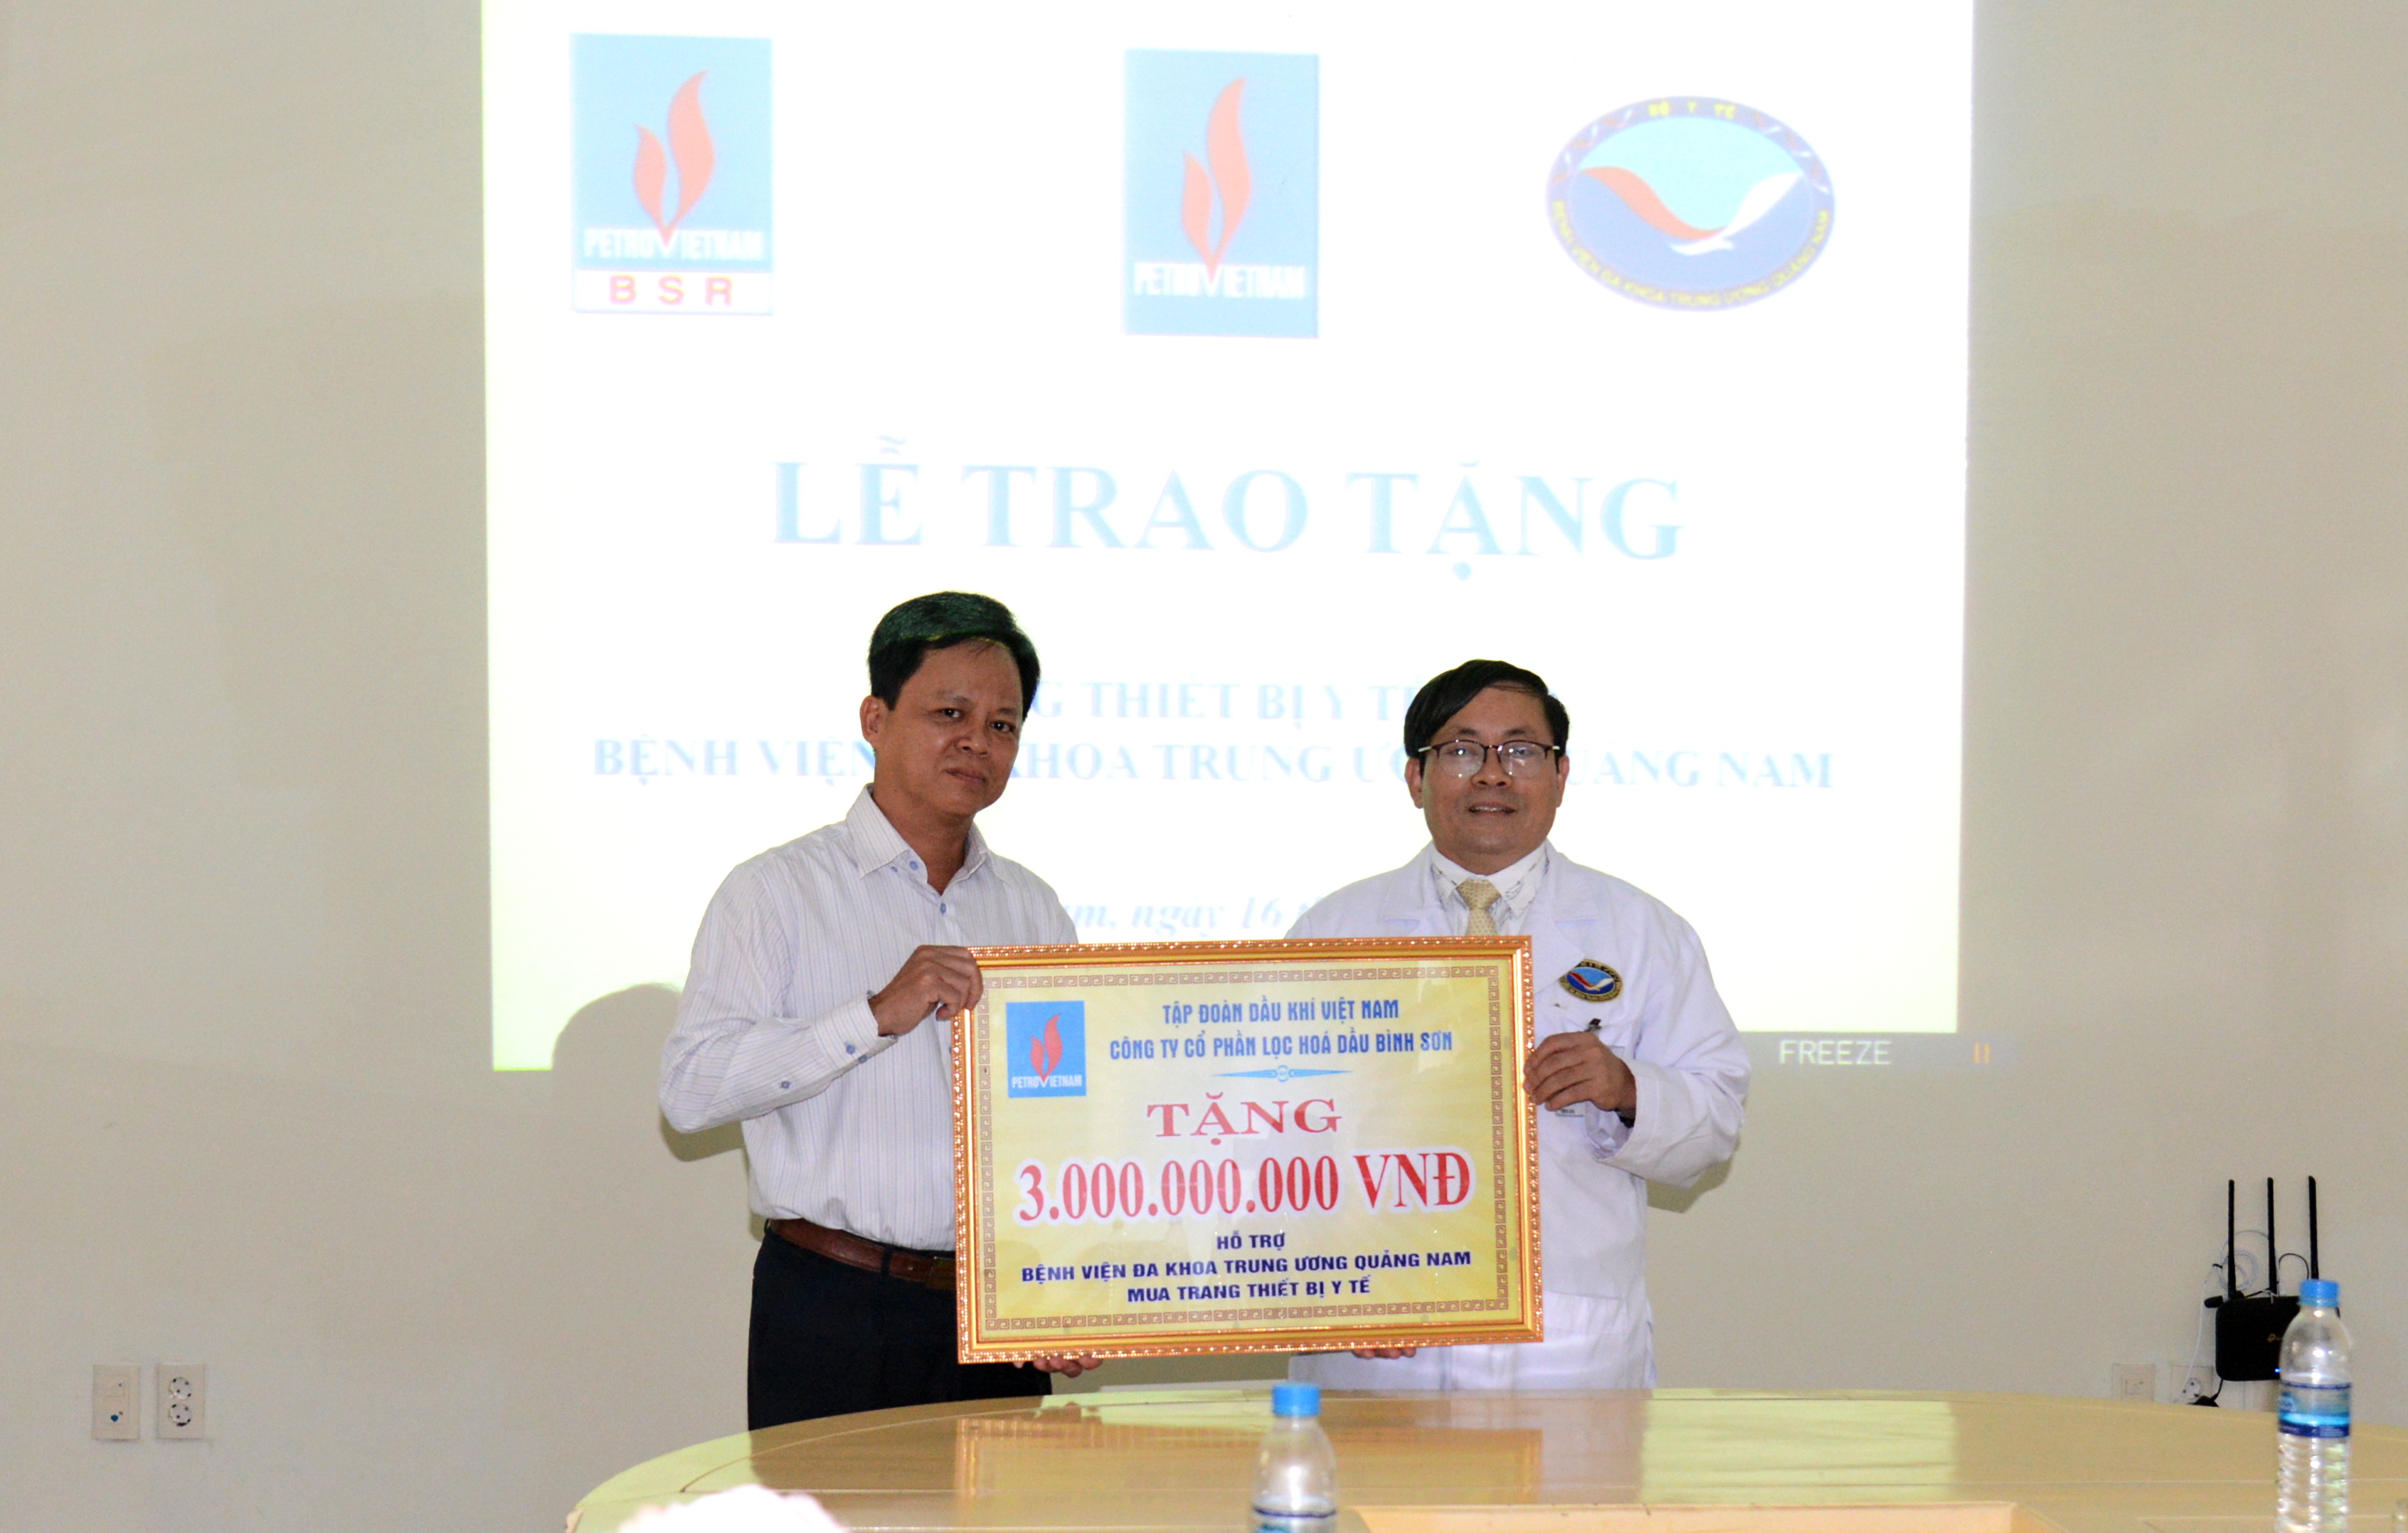 Đại diện lãnh đạo BSR trao bảng tượng trưng số tiền hỗ trợ 3 tỷ đồng cho Bệnh viện Đa khoa Trung ương Quảng Nam để mua sắm thiết bị y tế